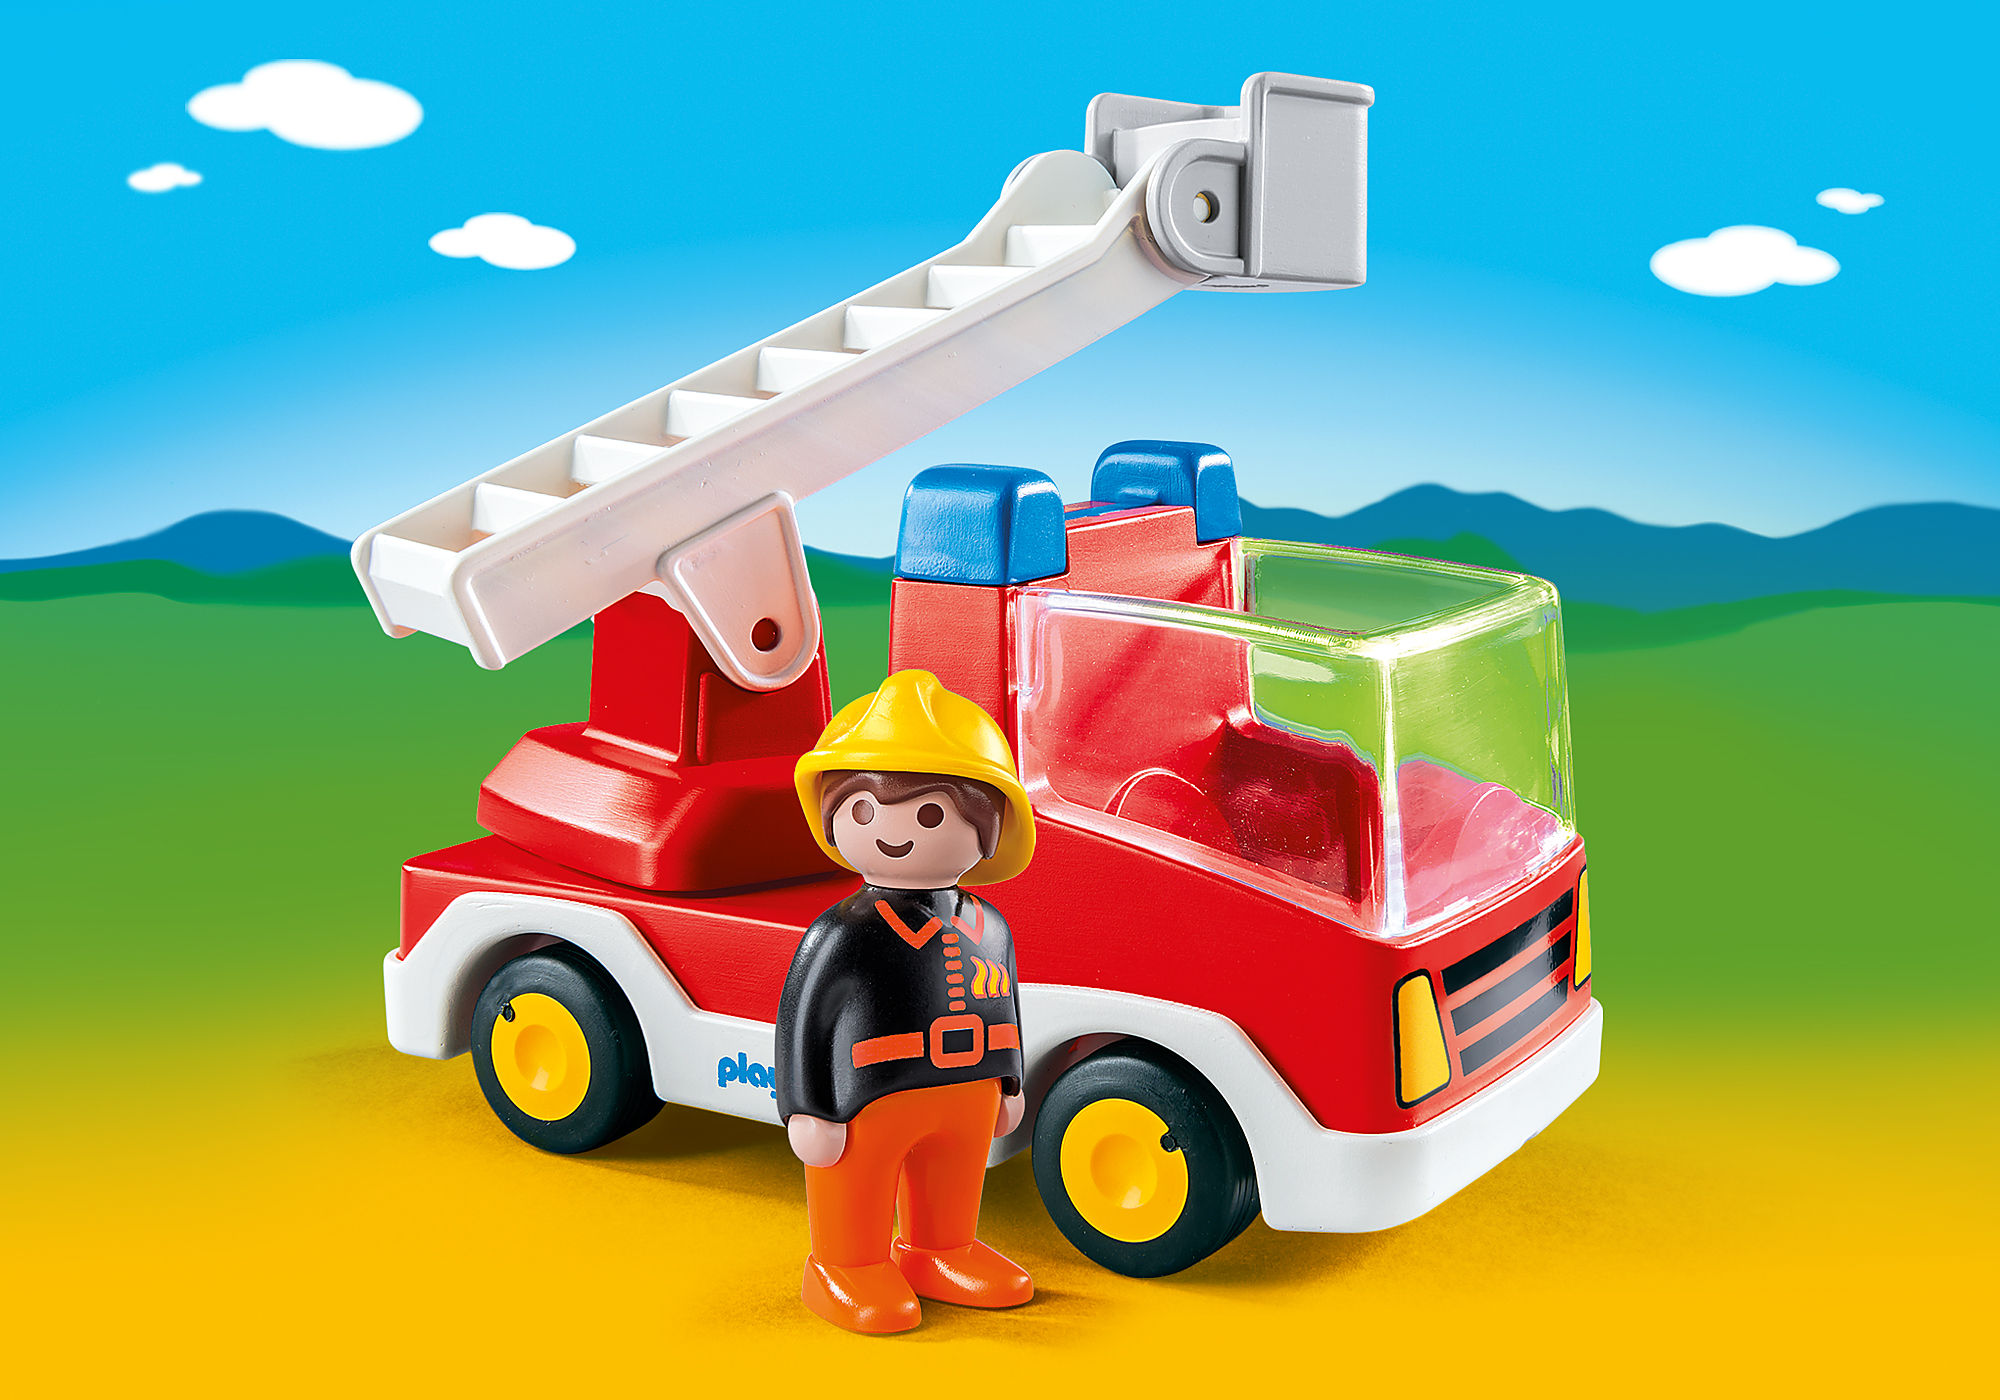 PLAYMOBIL - II - Camion de pompiers et grande échelle - JEUX